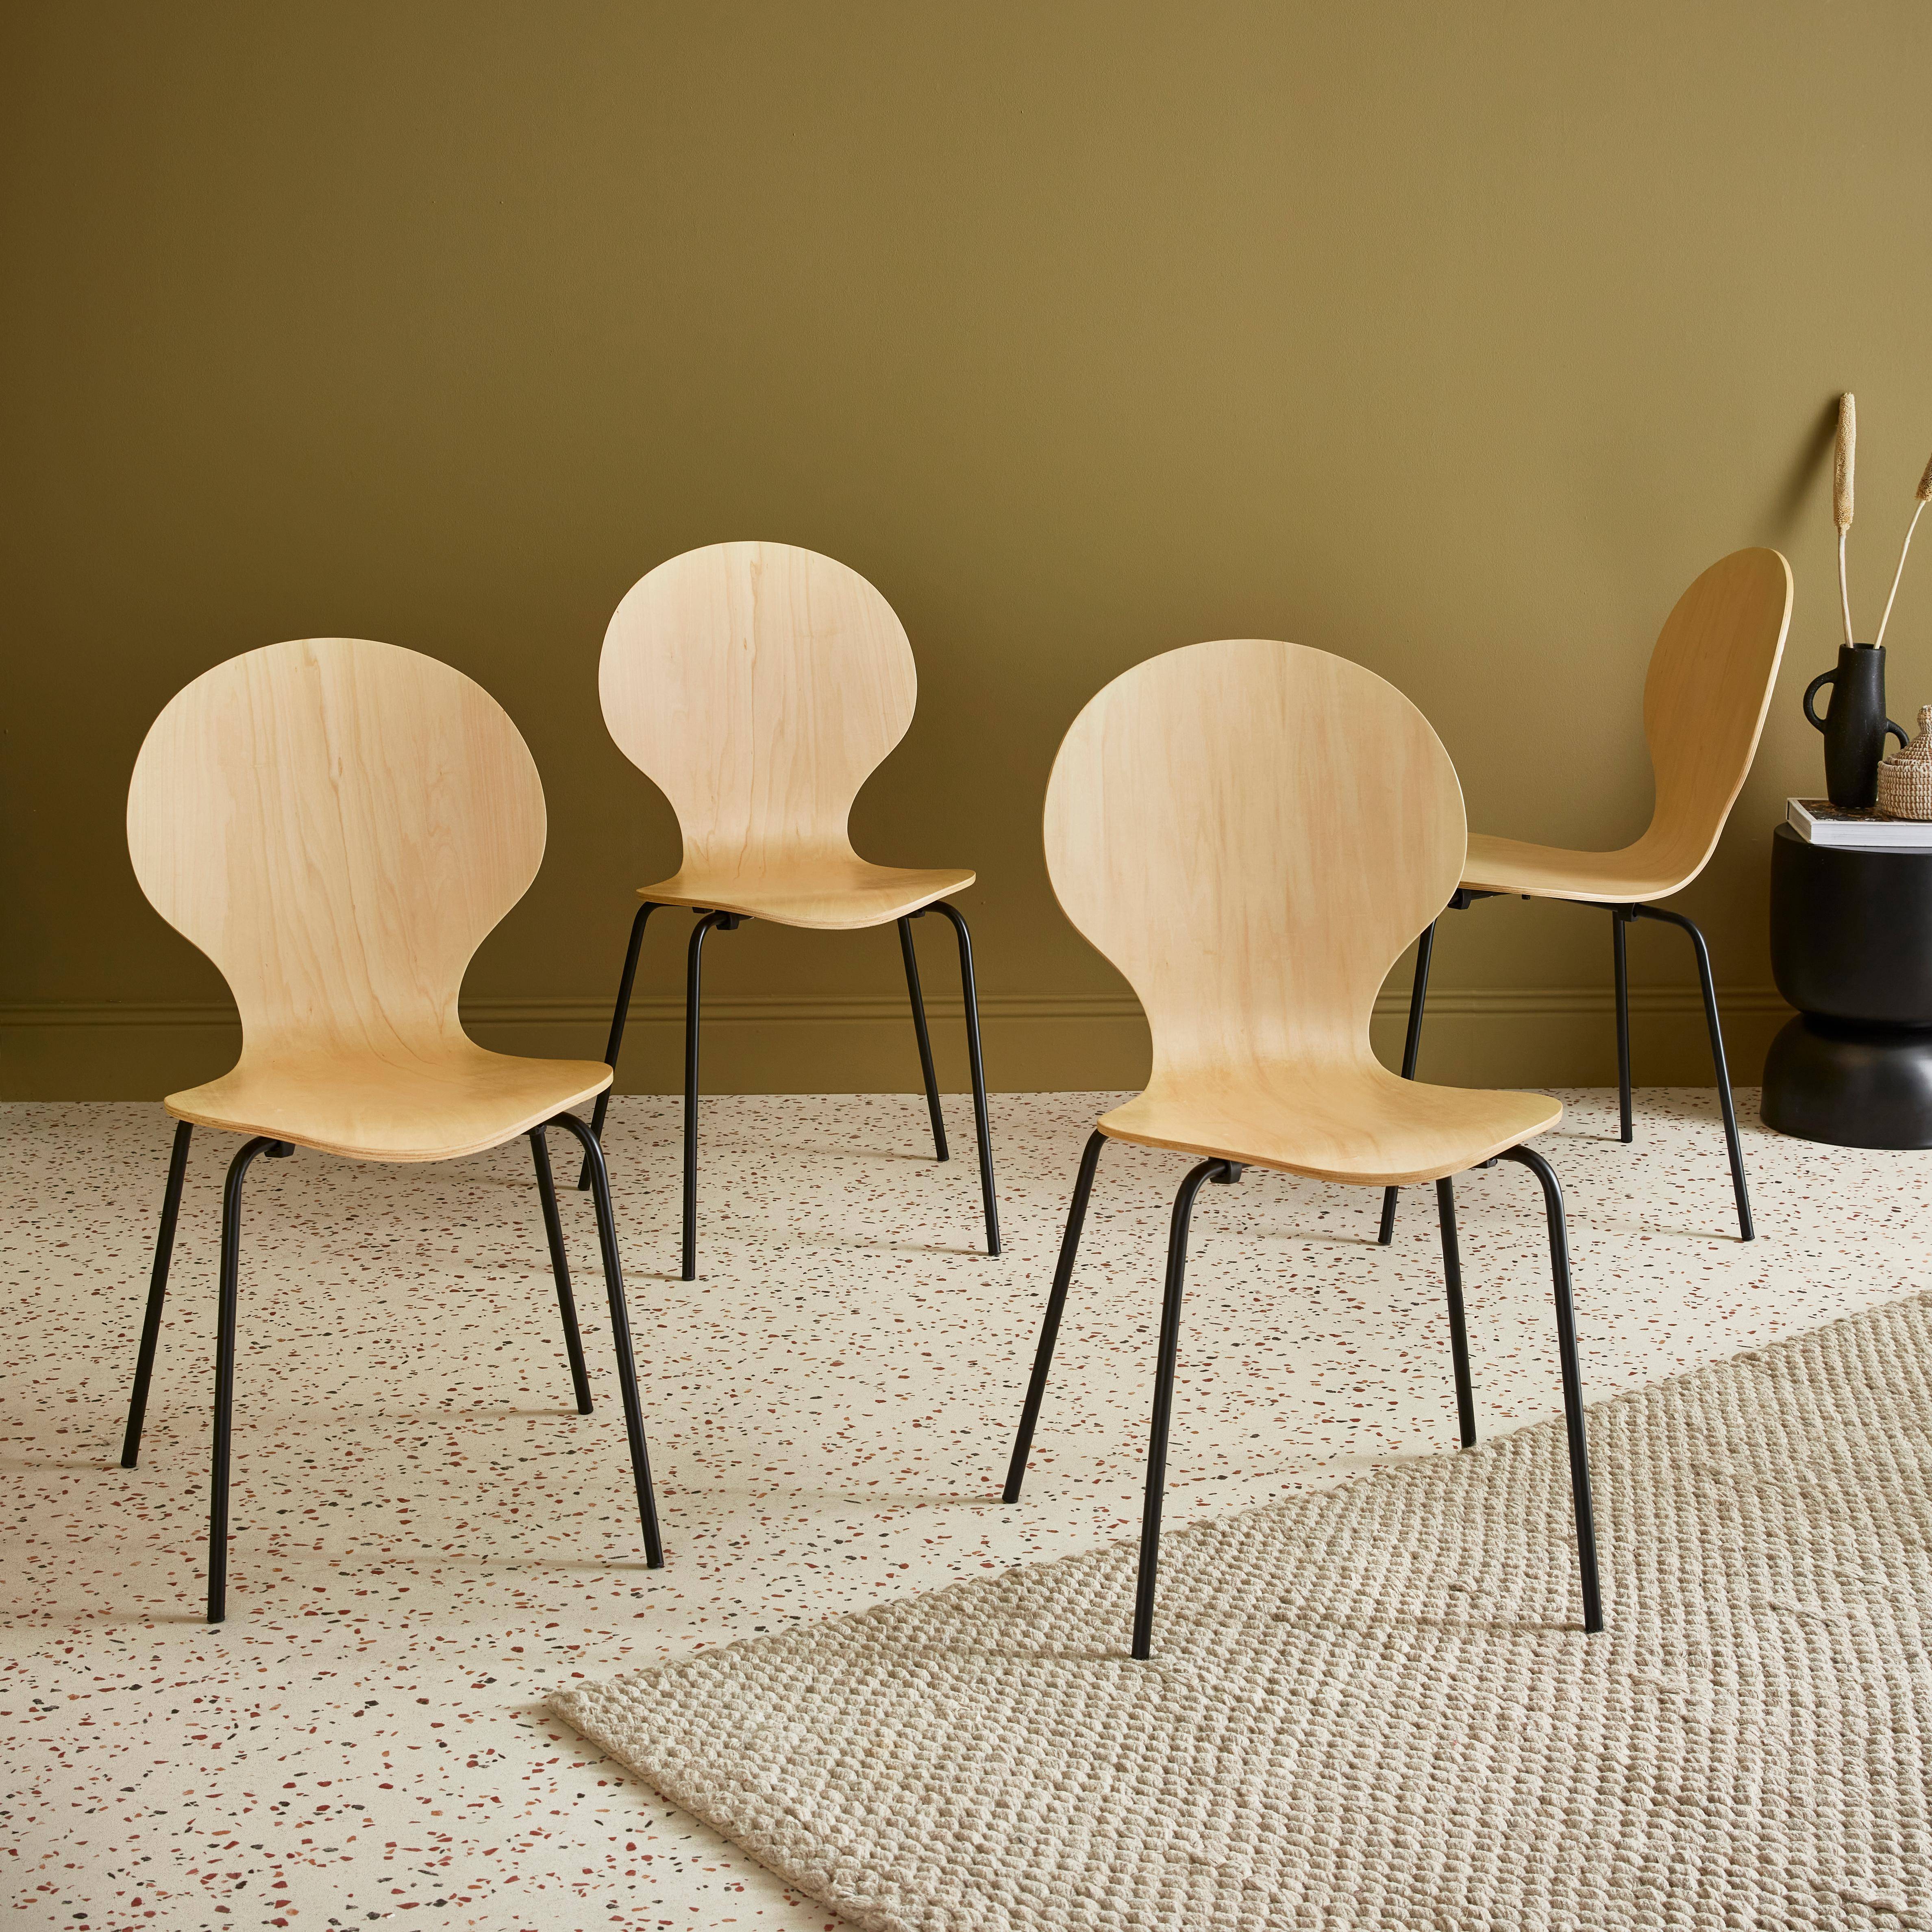 Conjunto de 4 cadeiras empilháveis retro naturais, madeira de hevea e contraplacado, pernas de aço, Naomi, L 43 x P 48 x A 87cm,sweeek,Photo1